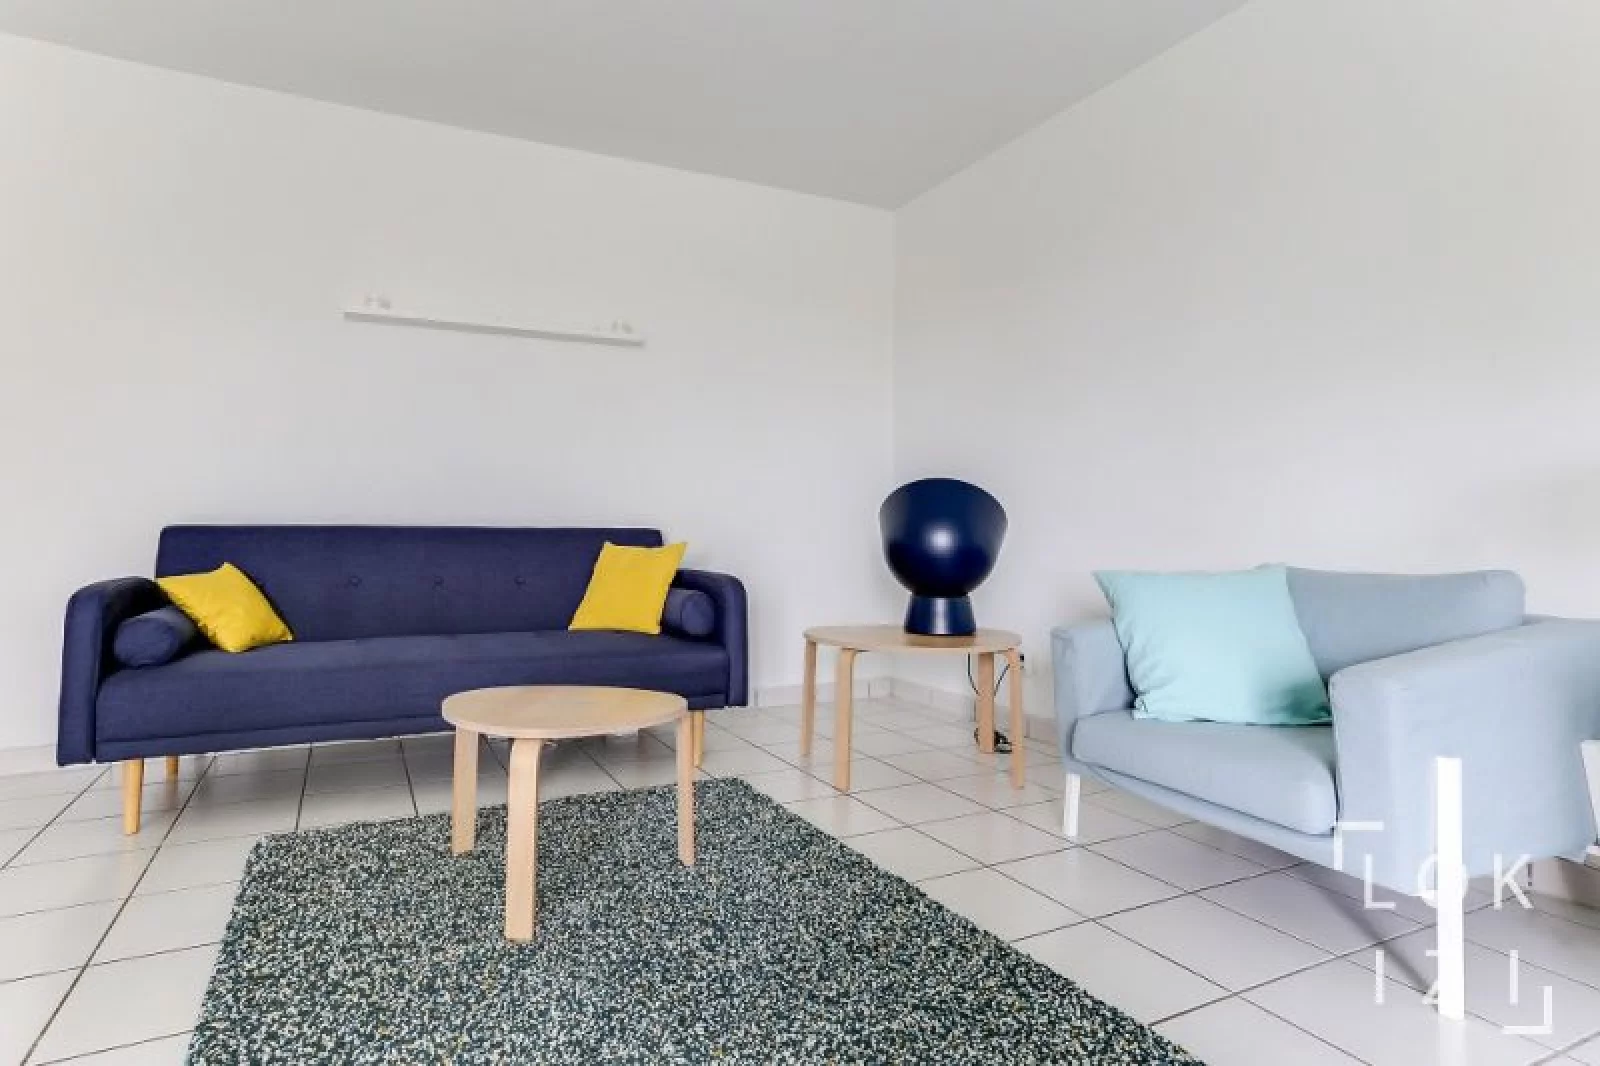 Location appartement meublé 2 pièces 46m² (Bordeaux - Chartrons)